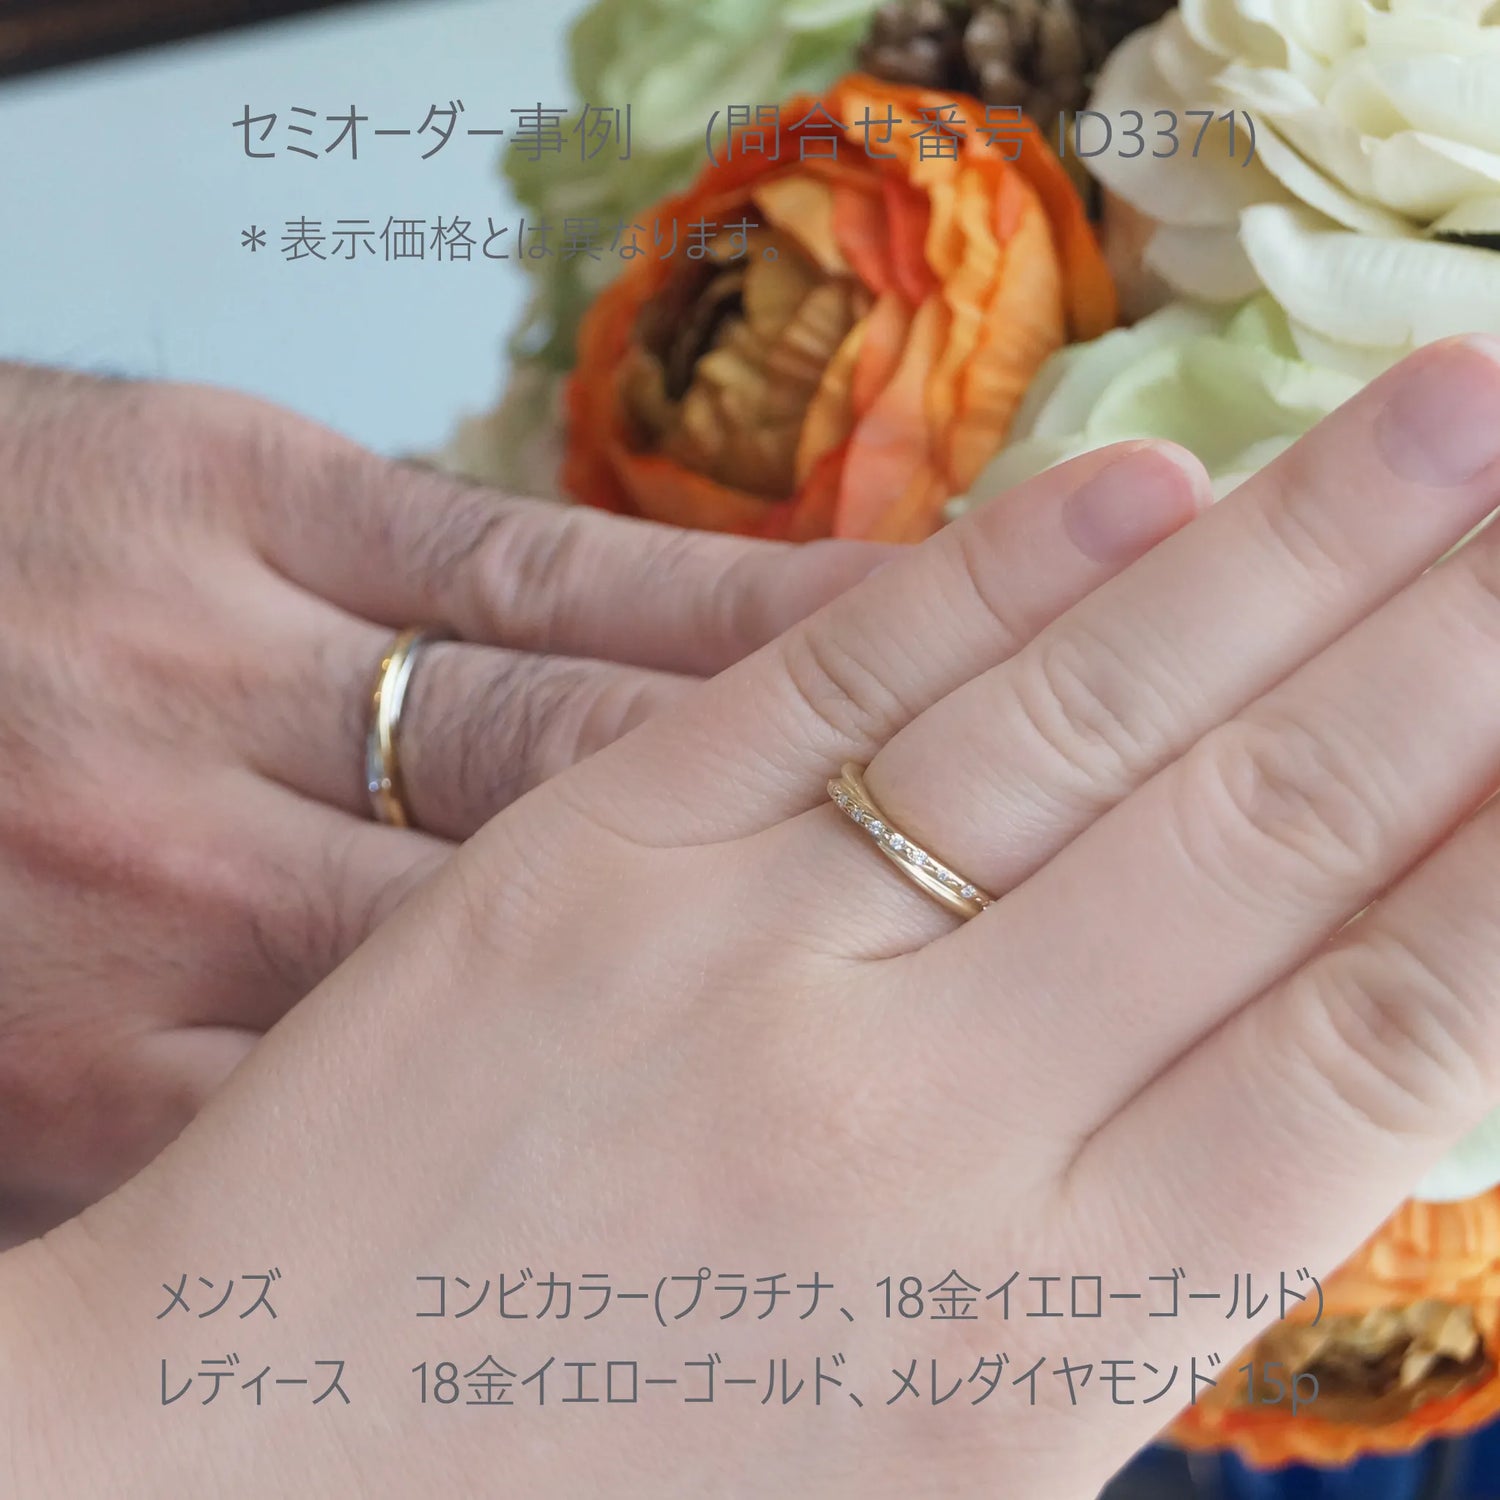 Crossing 光沢とつや消しで表現した結婚指輪 お客様レビュー